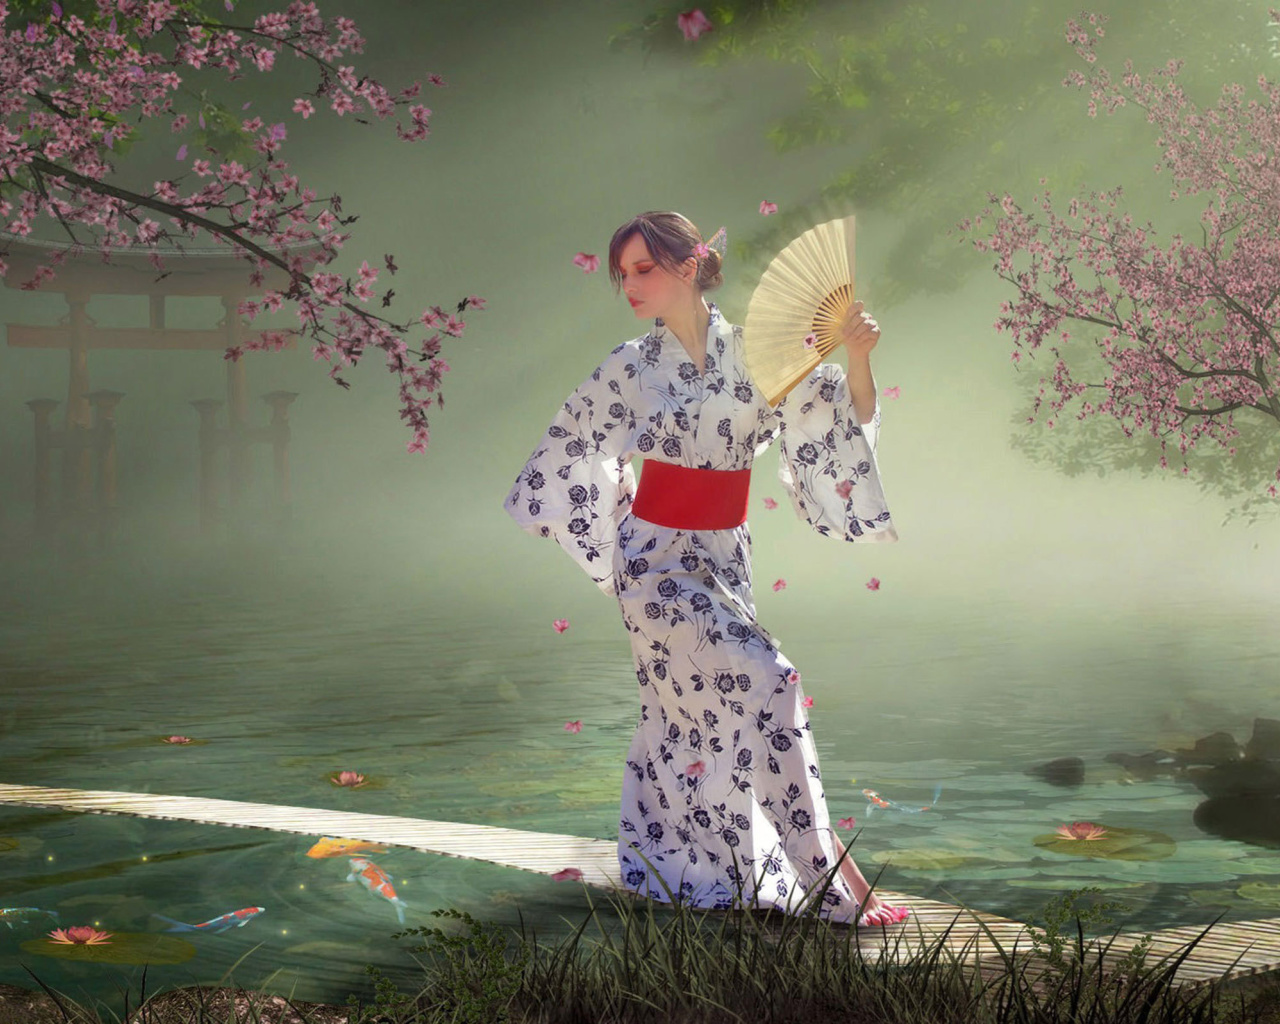 Das Japanese Girl In Kimono in Sakura Garden Wallpaper 1280x1024